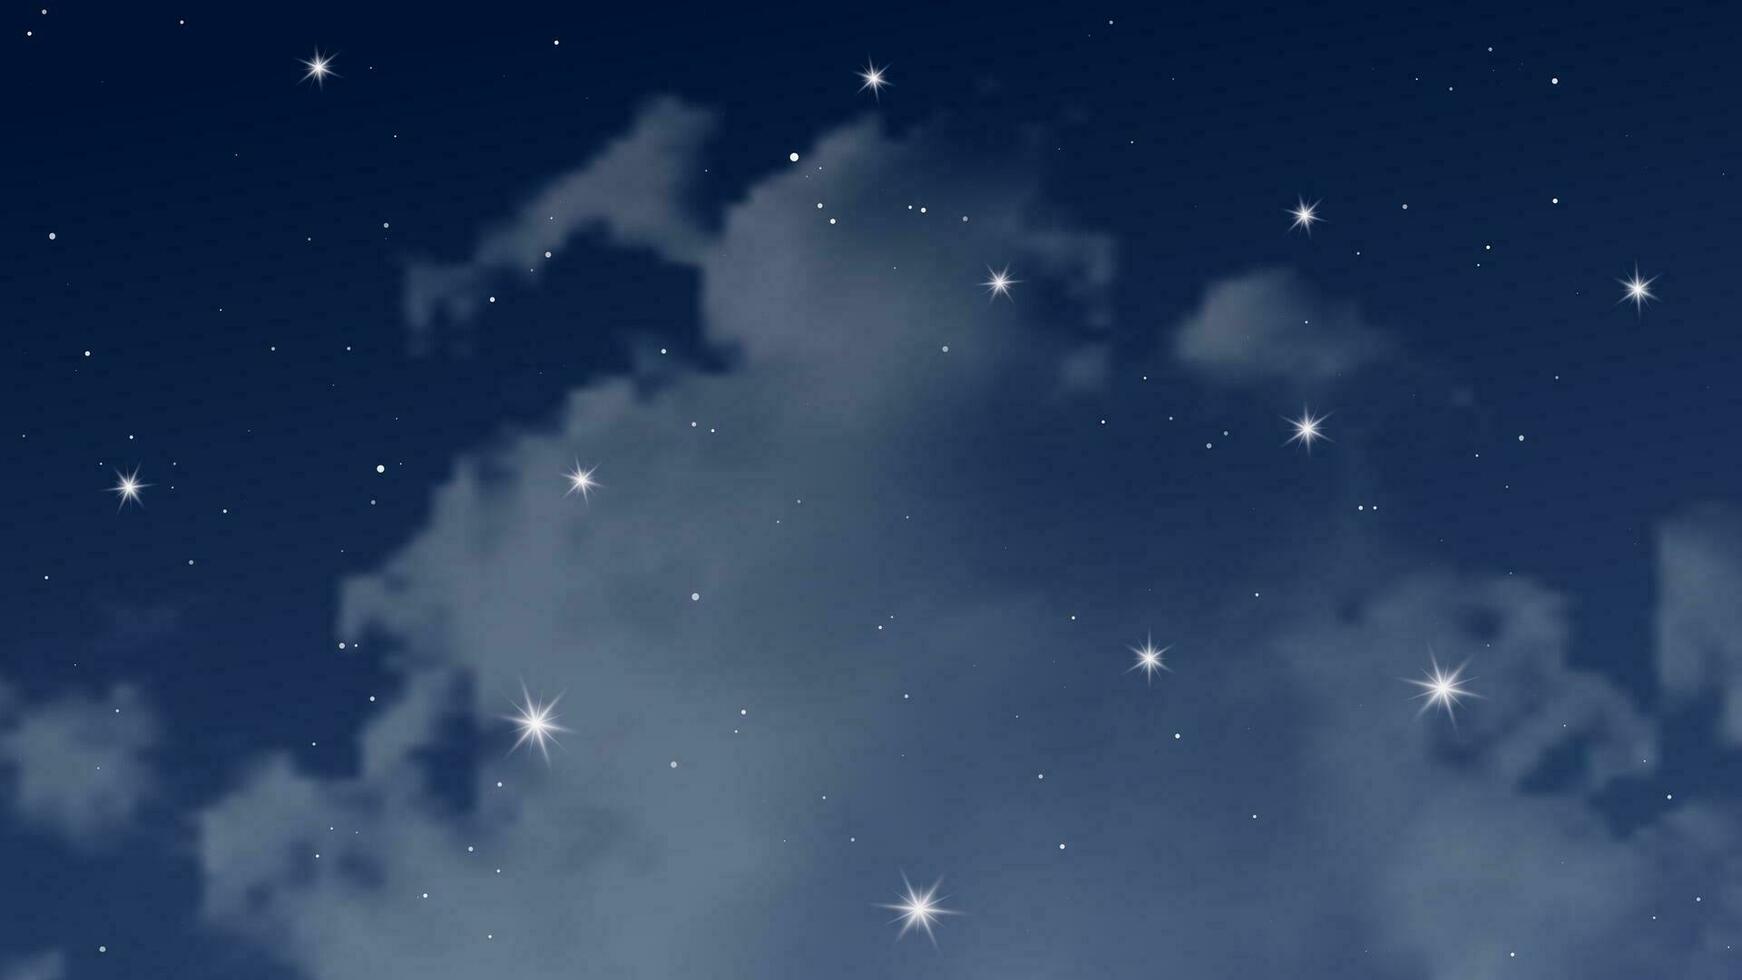 nacht lucht met wolken en veel sterren. abstract natuur achtergrond met sterrenstof in diep universum. vector illustratie.